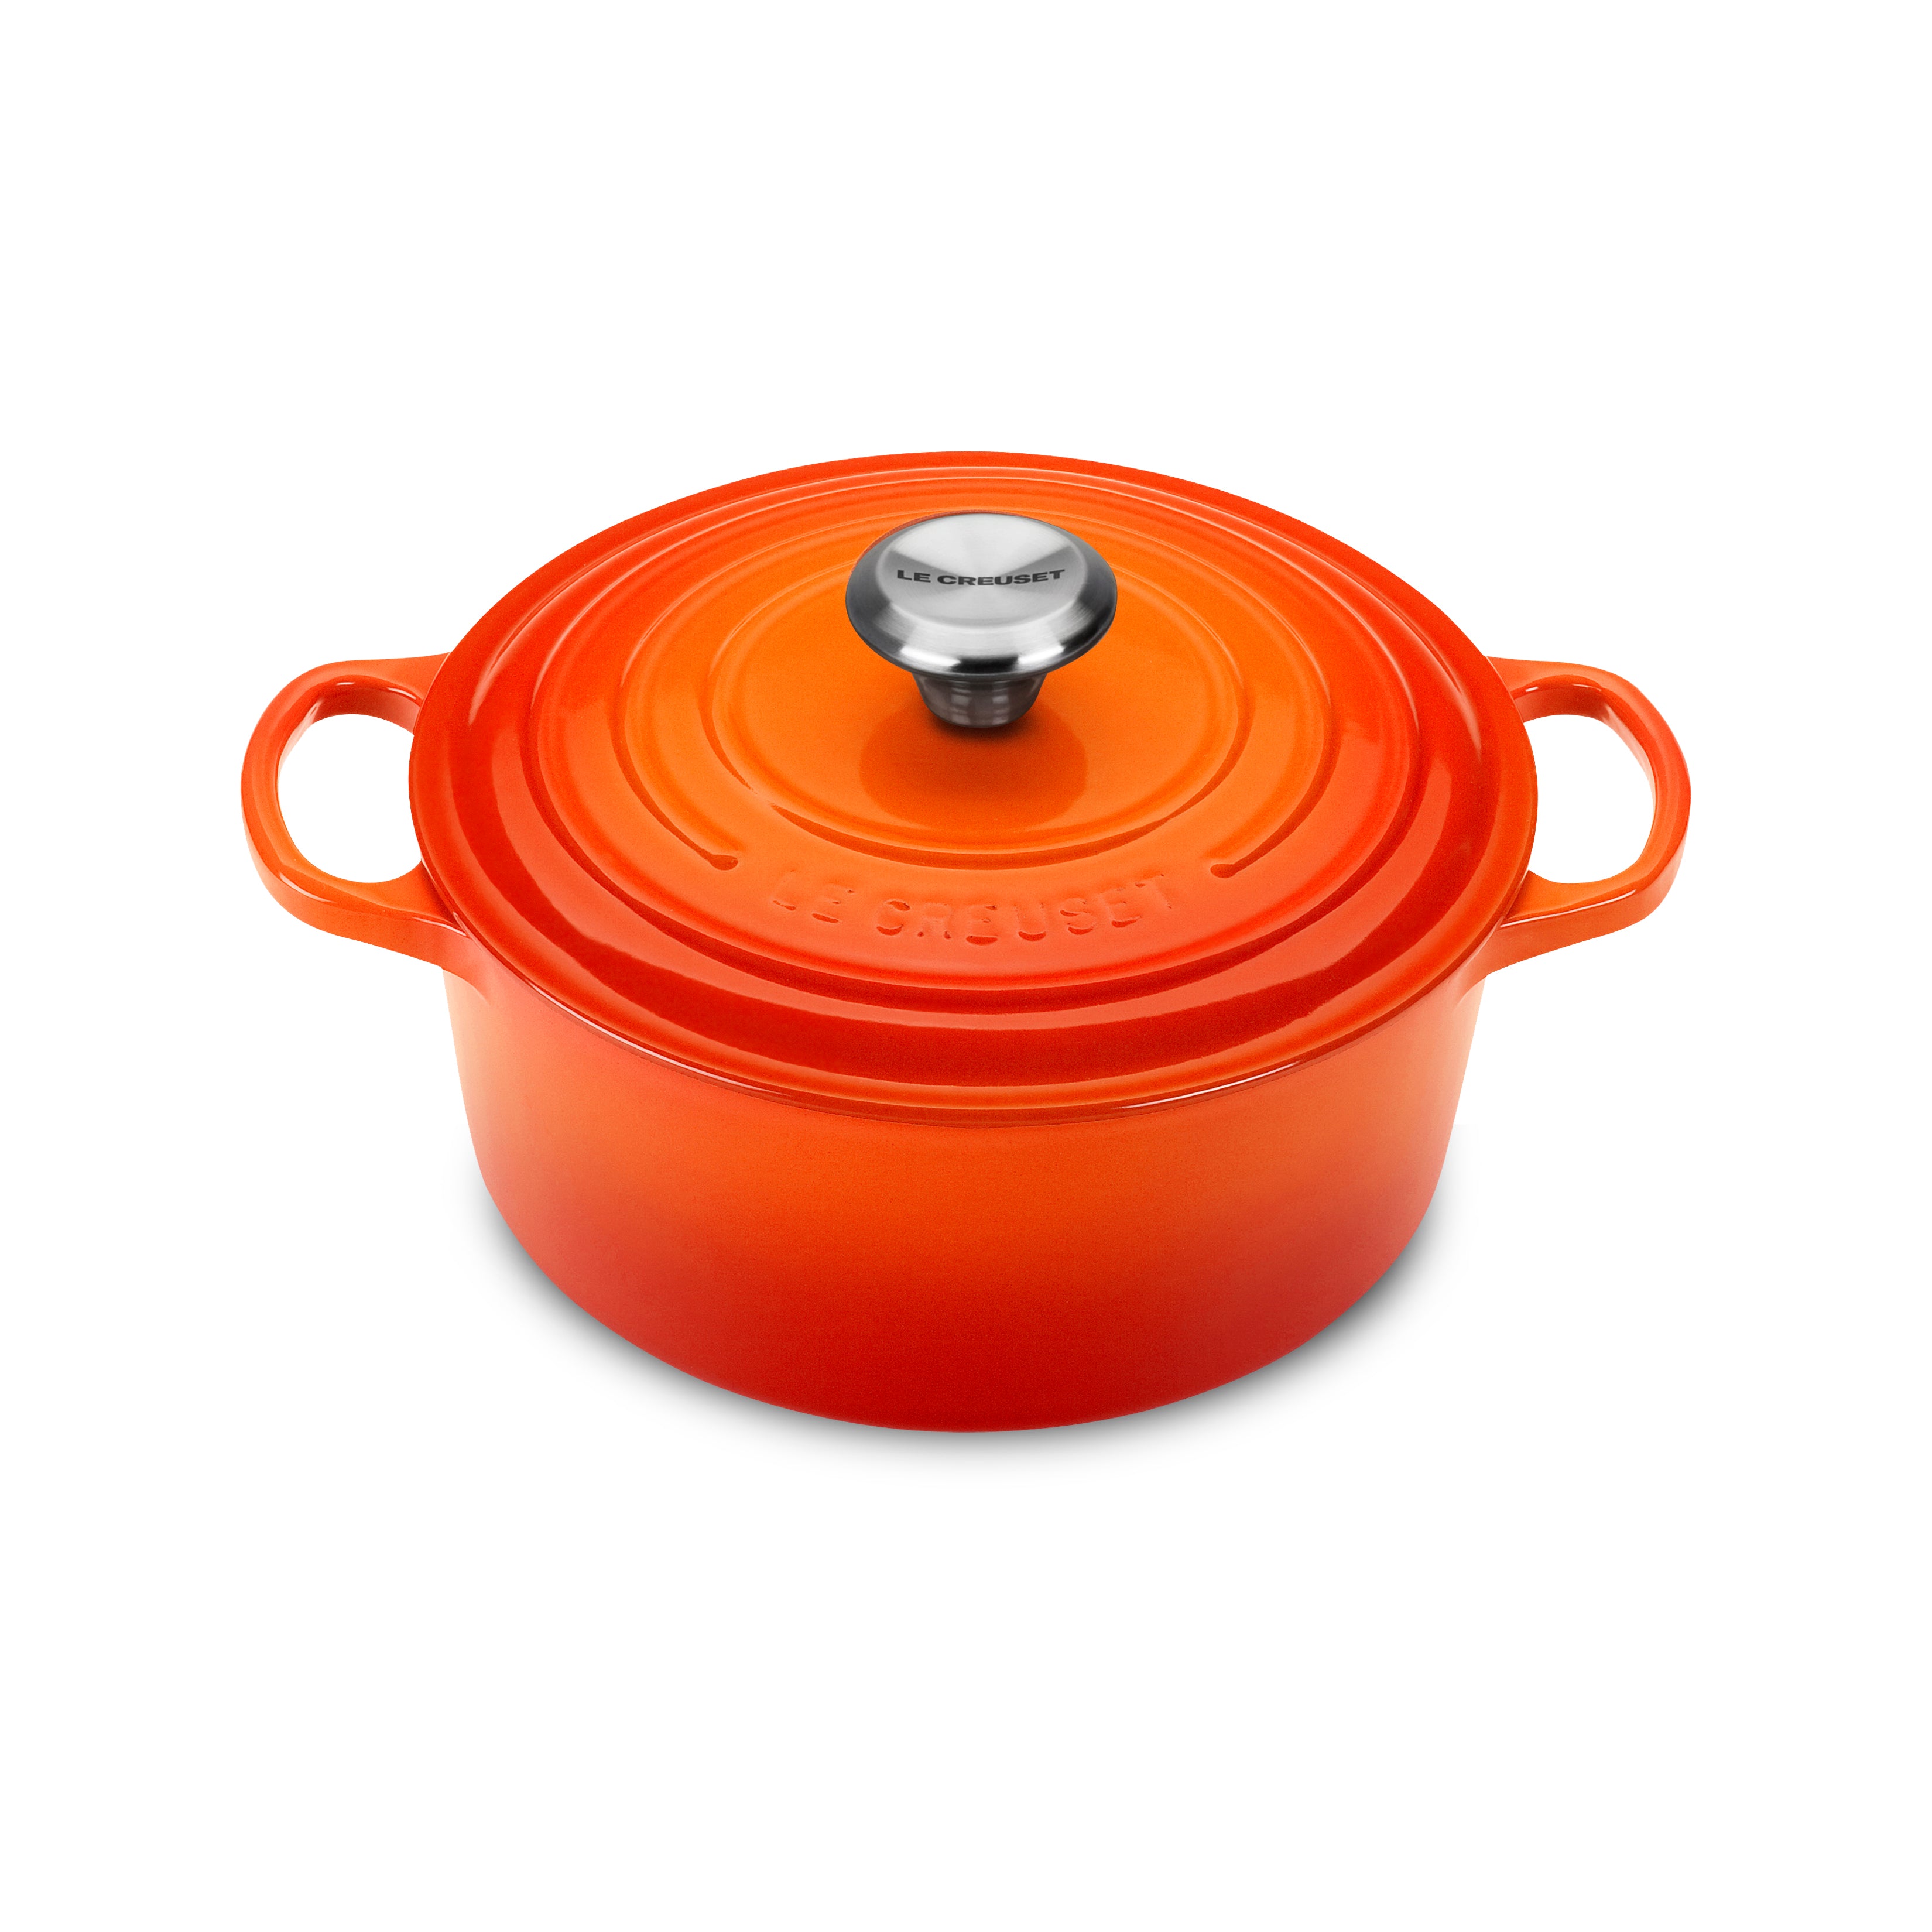 🔥Vintage LE CREUSET Enamel Cast Iron Pot Wood Handle in🔥 Orange 🔥